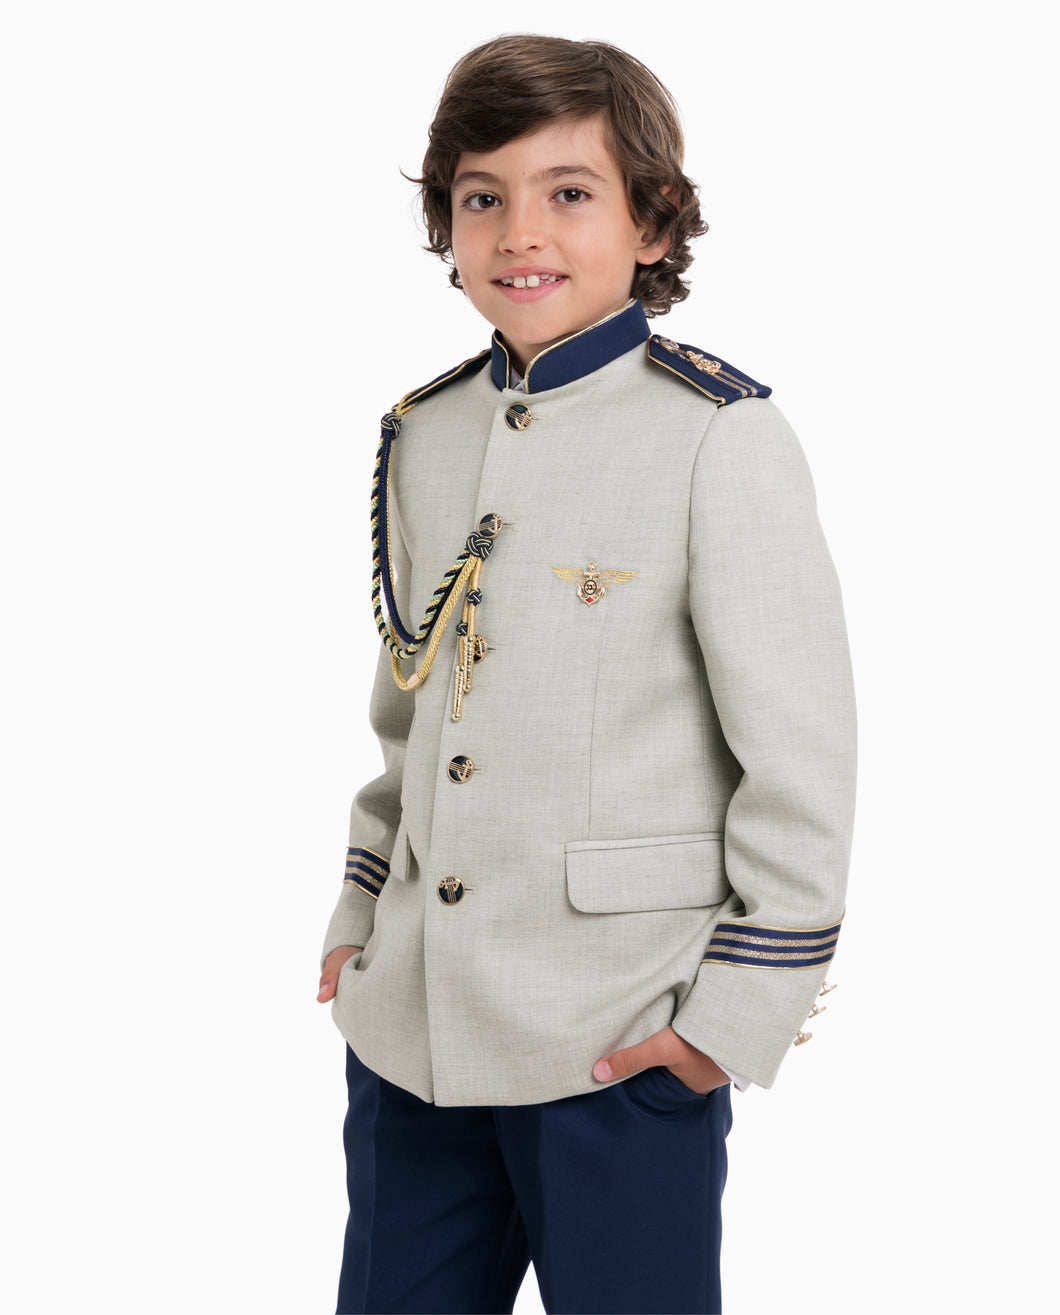 Admiral Helmsman Communion Suit 2597